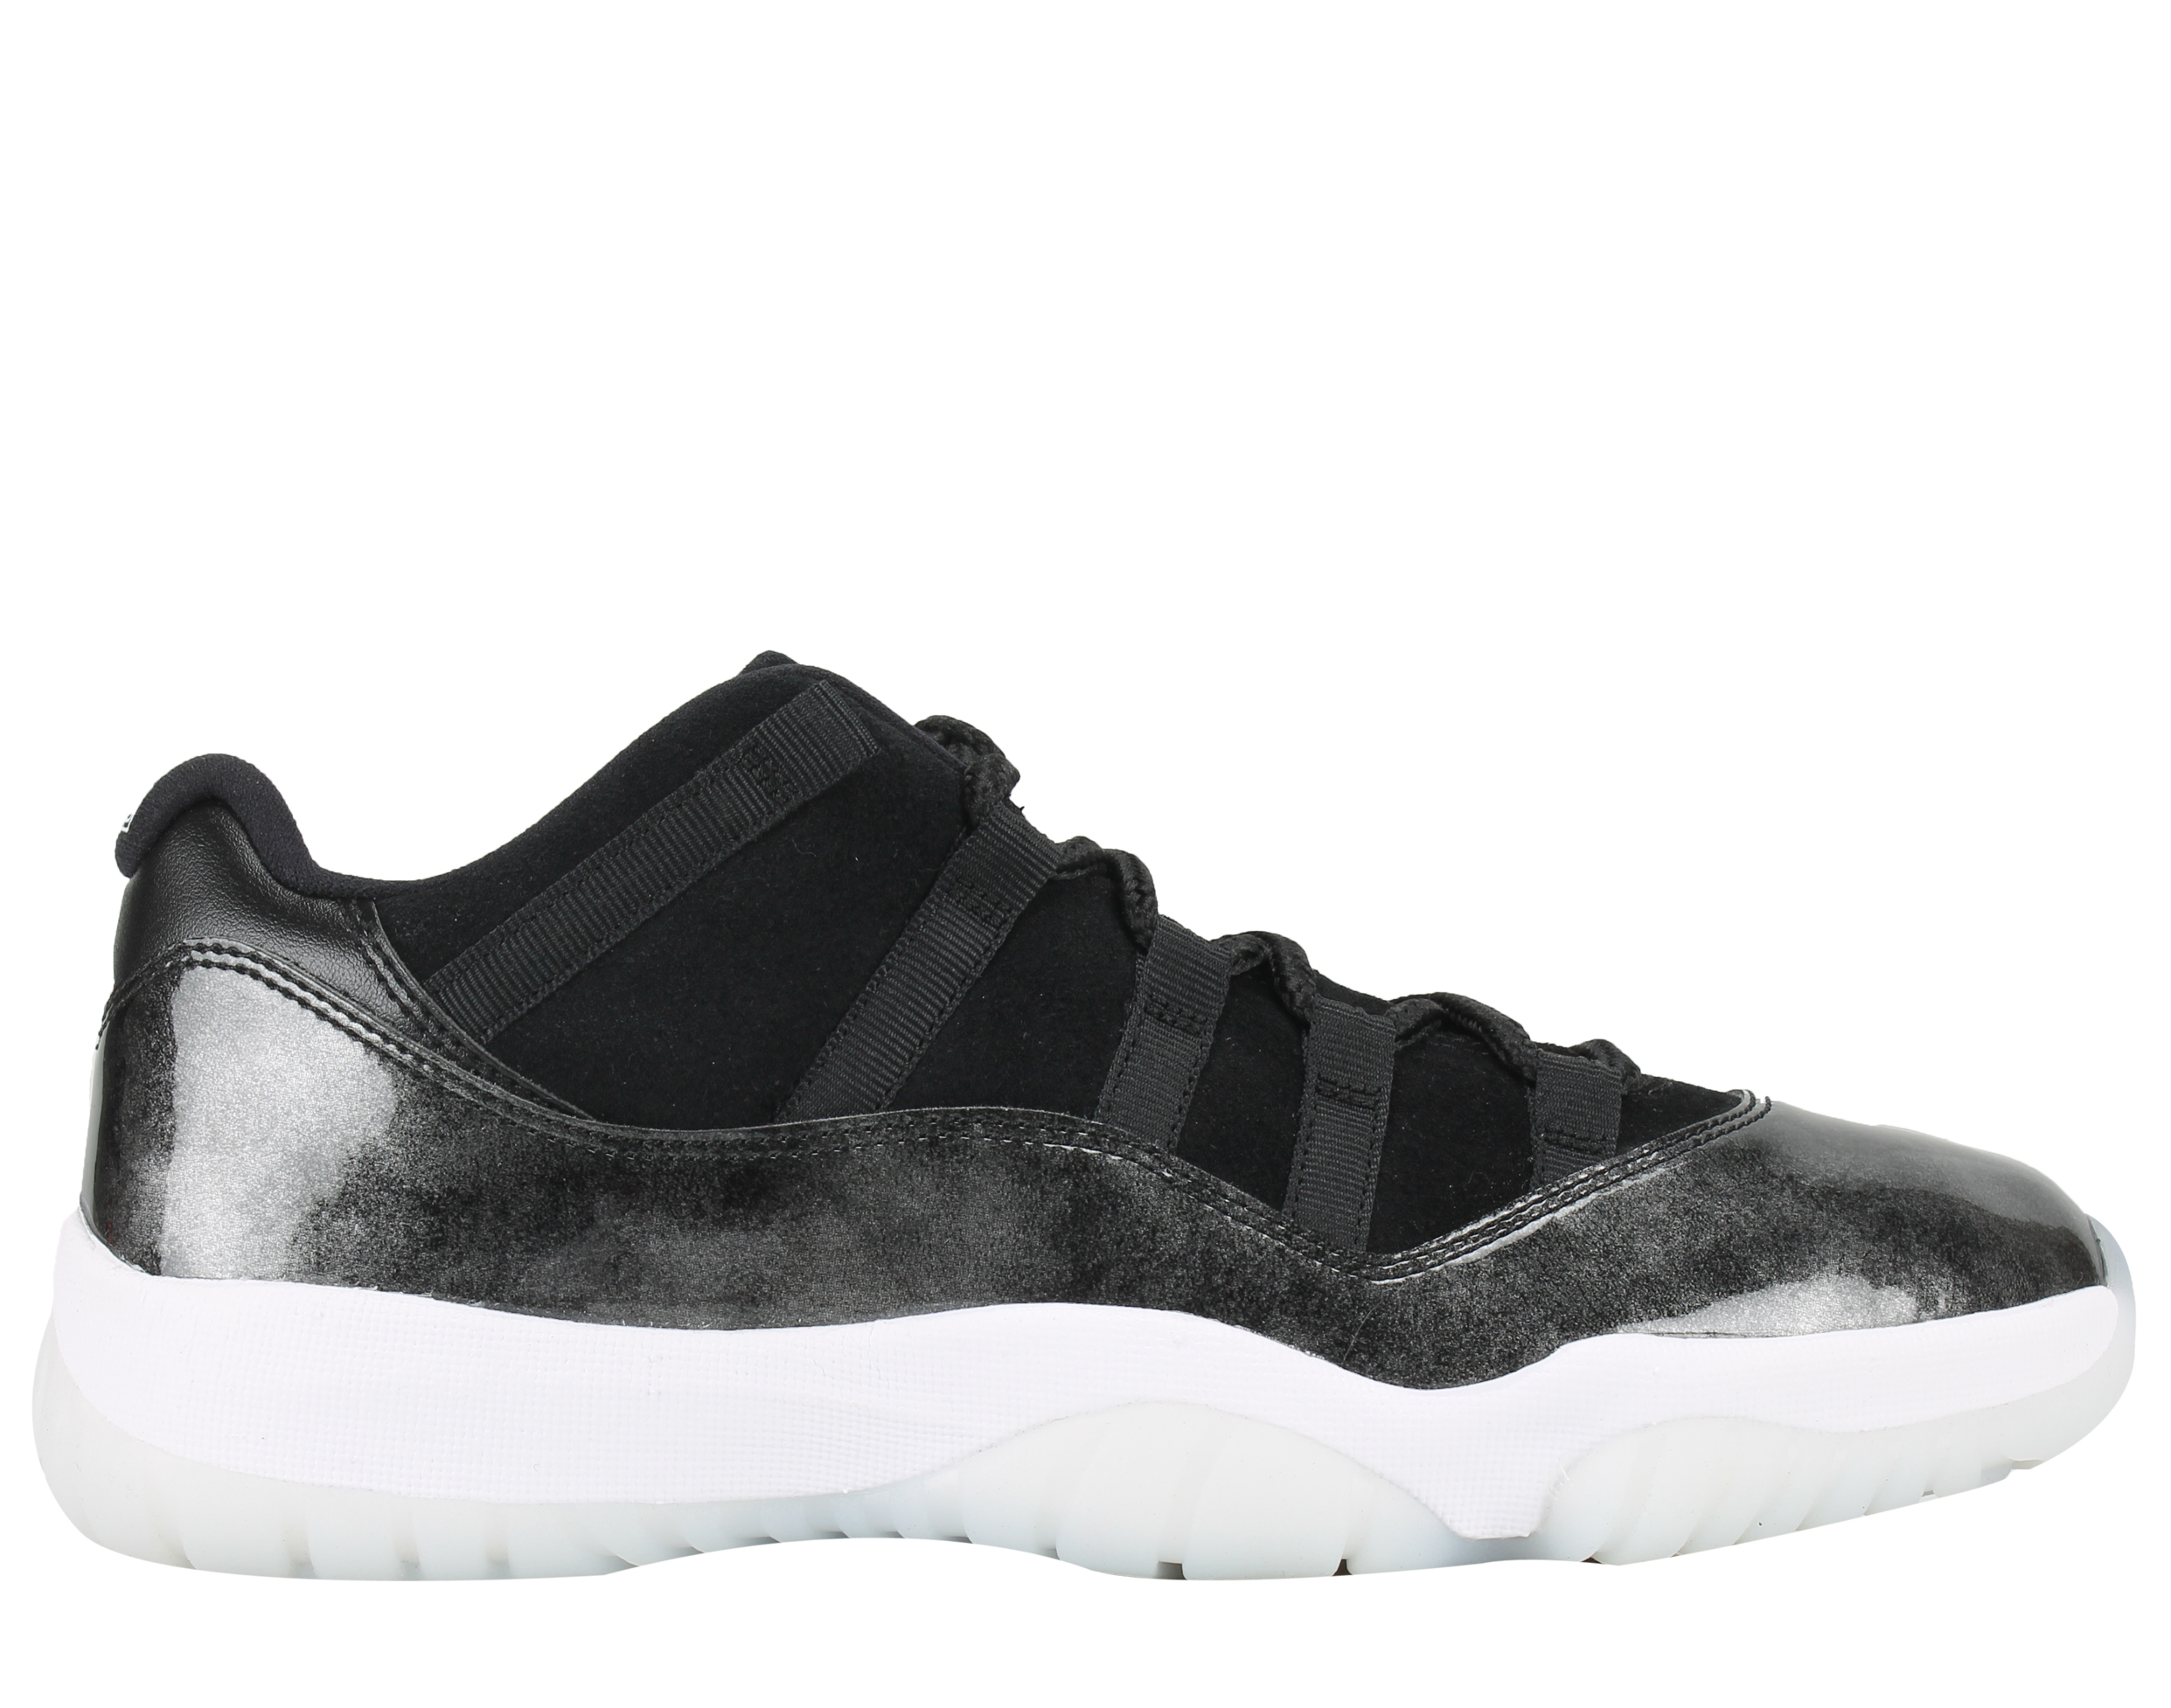 Nike Mens Air Jordan 11 Retro Low "Barons" Black/White-Silver 528895-010 - image 2 of 6